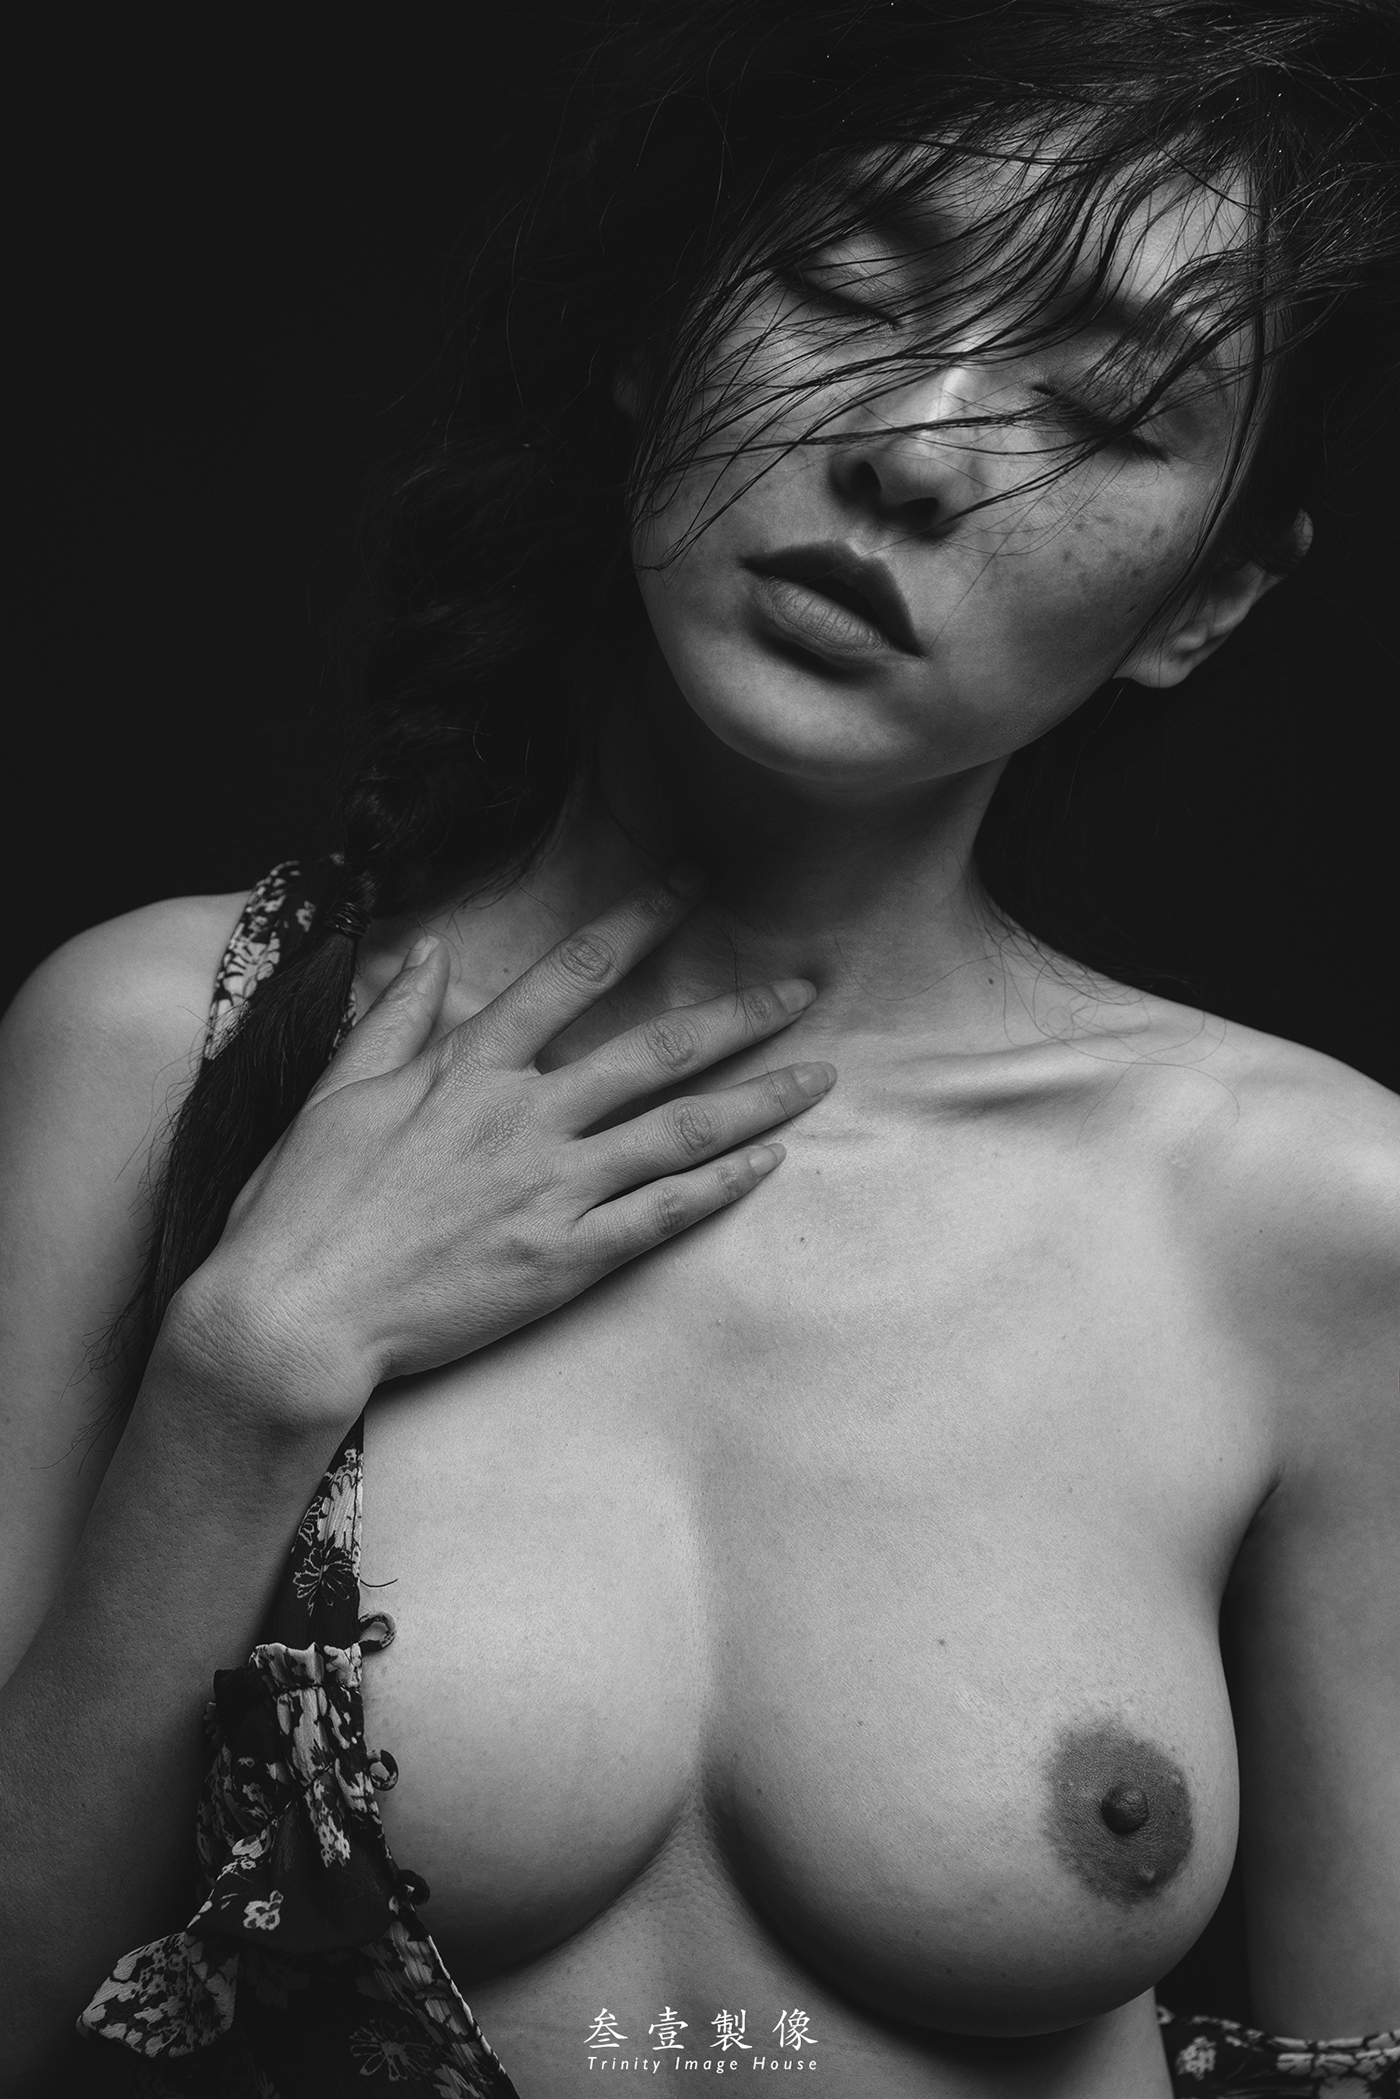 фото женщины с необычными грудями фото 12